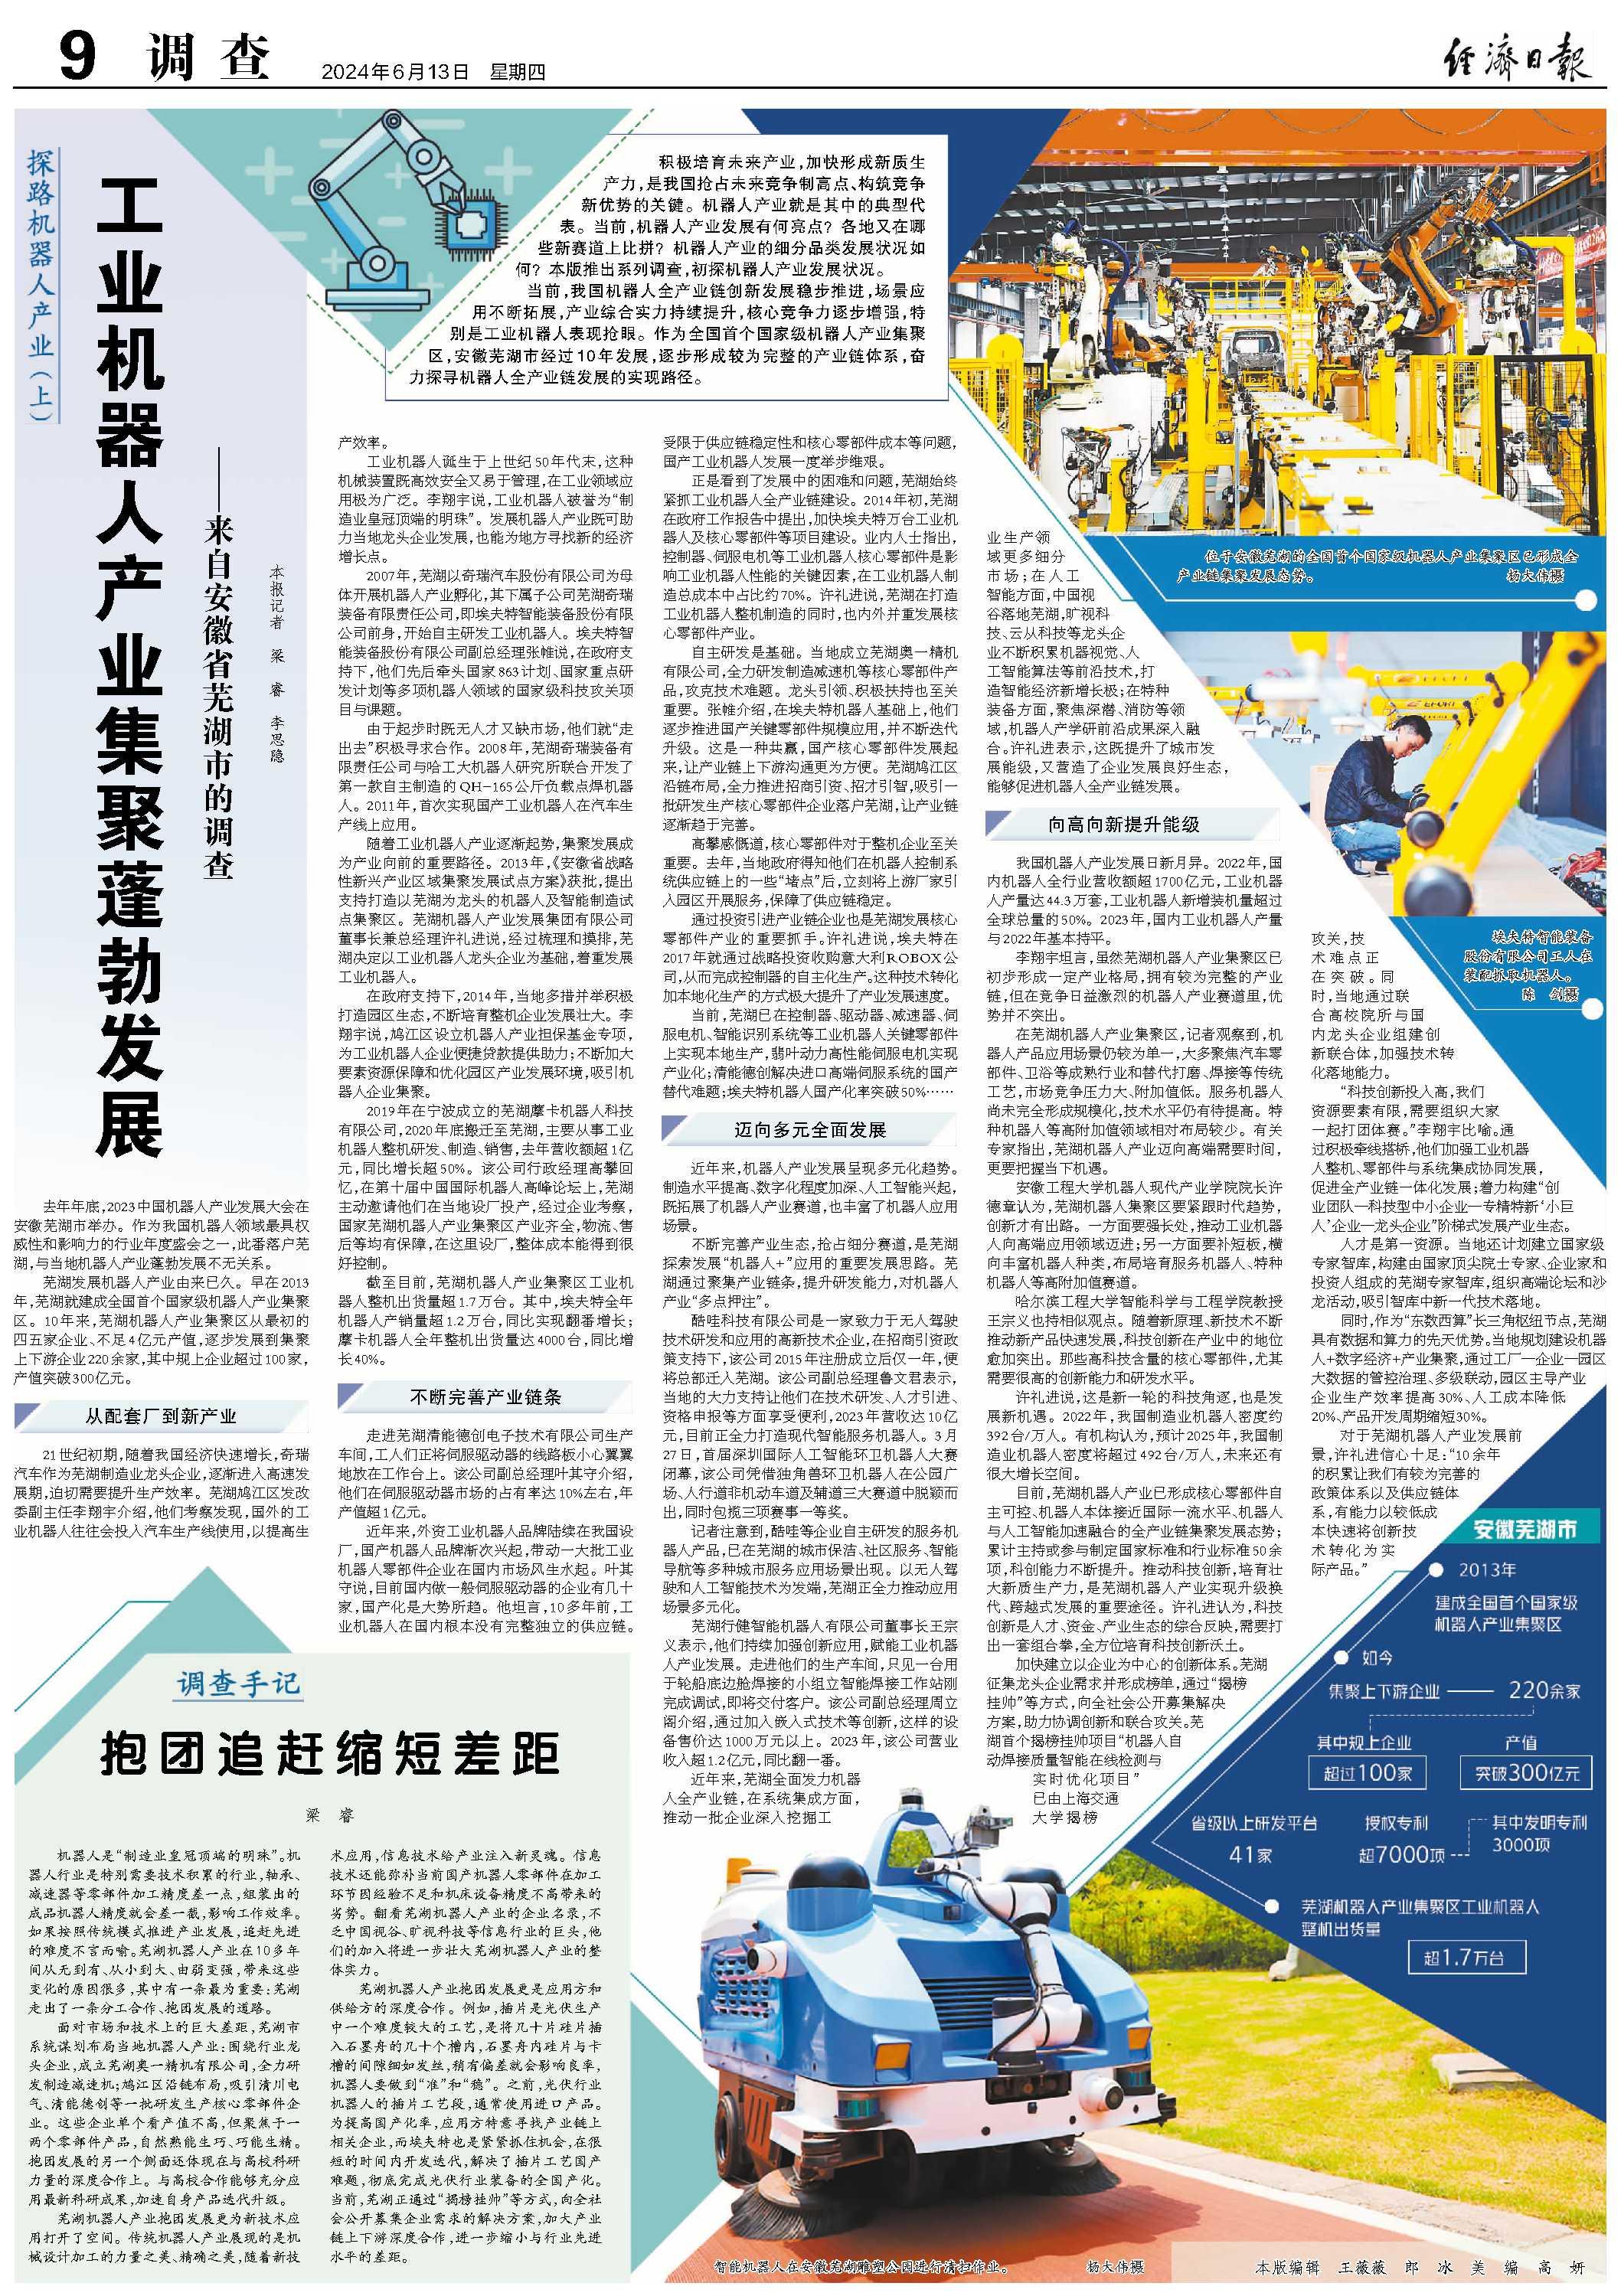 工业机器人产业集聚蓬勃发展 ——来自安徽省芜湖市的调查